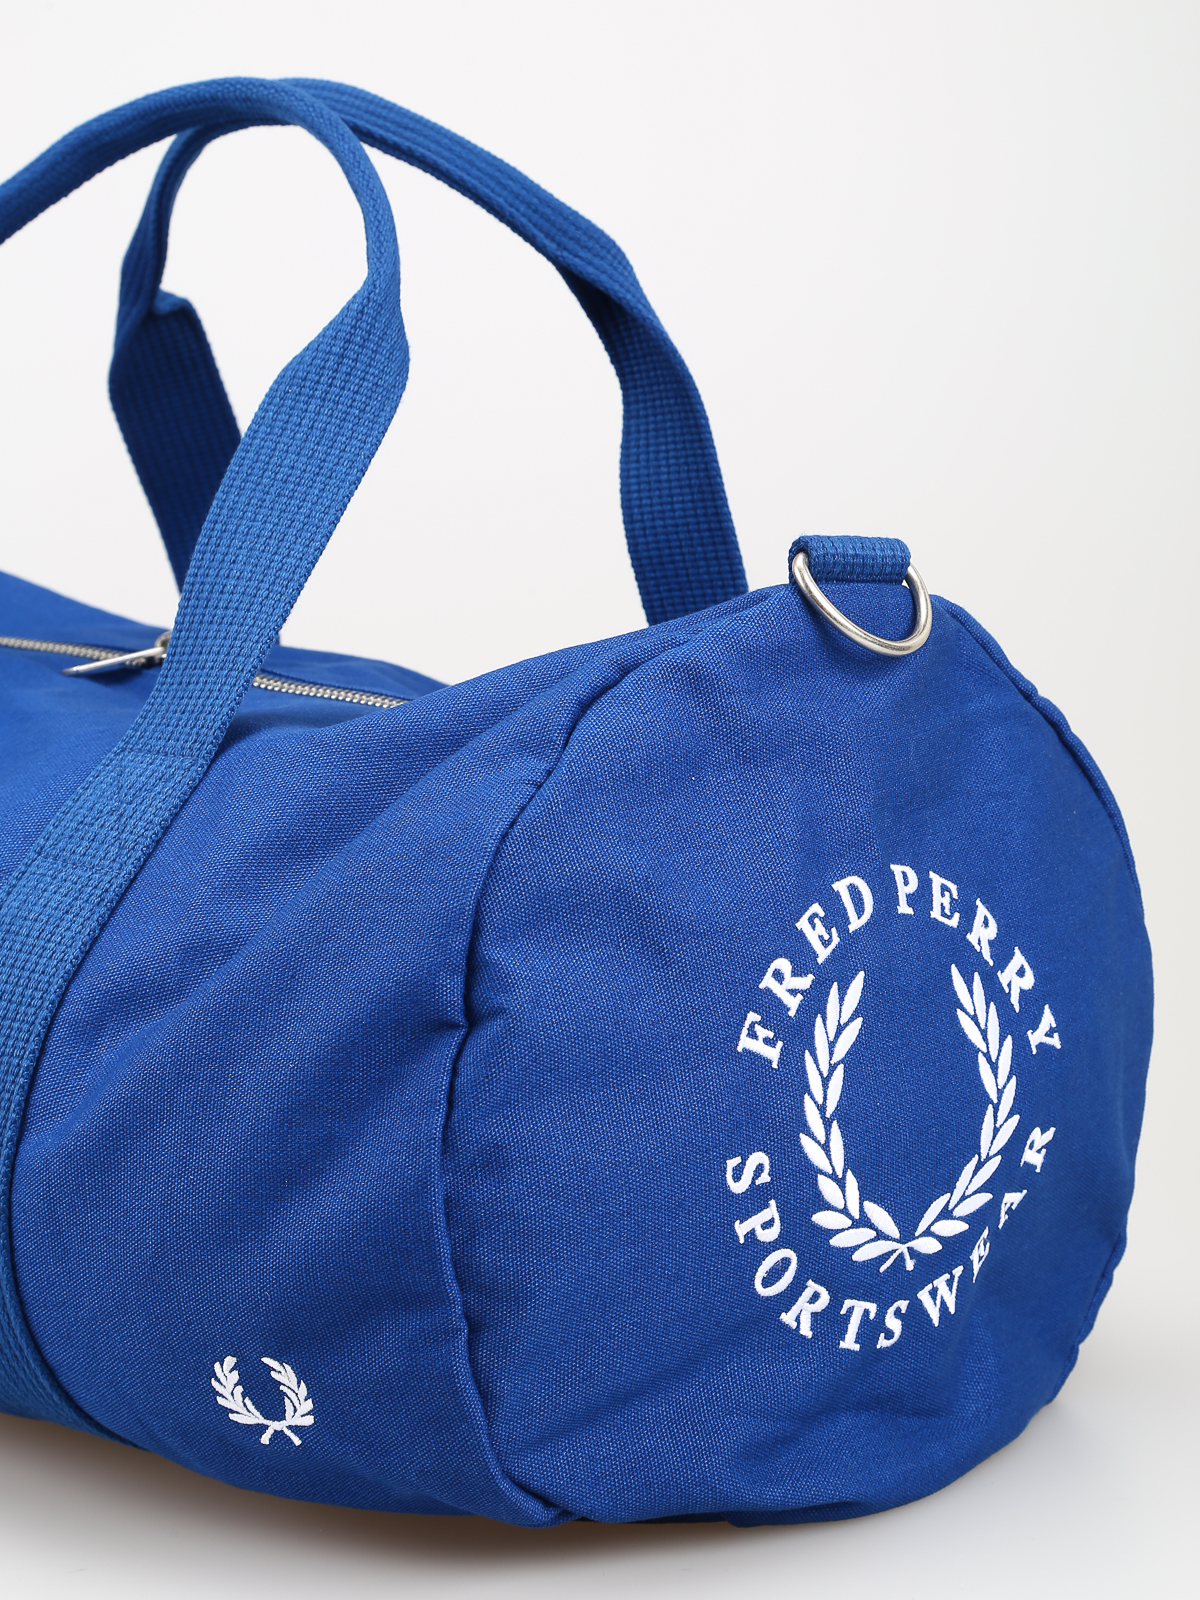 item Vergissing Geavanceerd Sport bags Fred Perry - Branded mid blue canvas duffle bag - L5277111